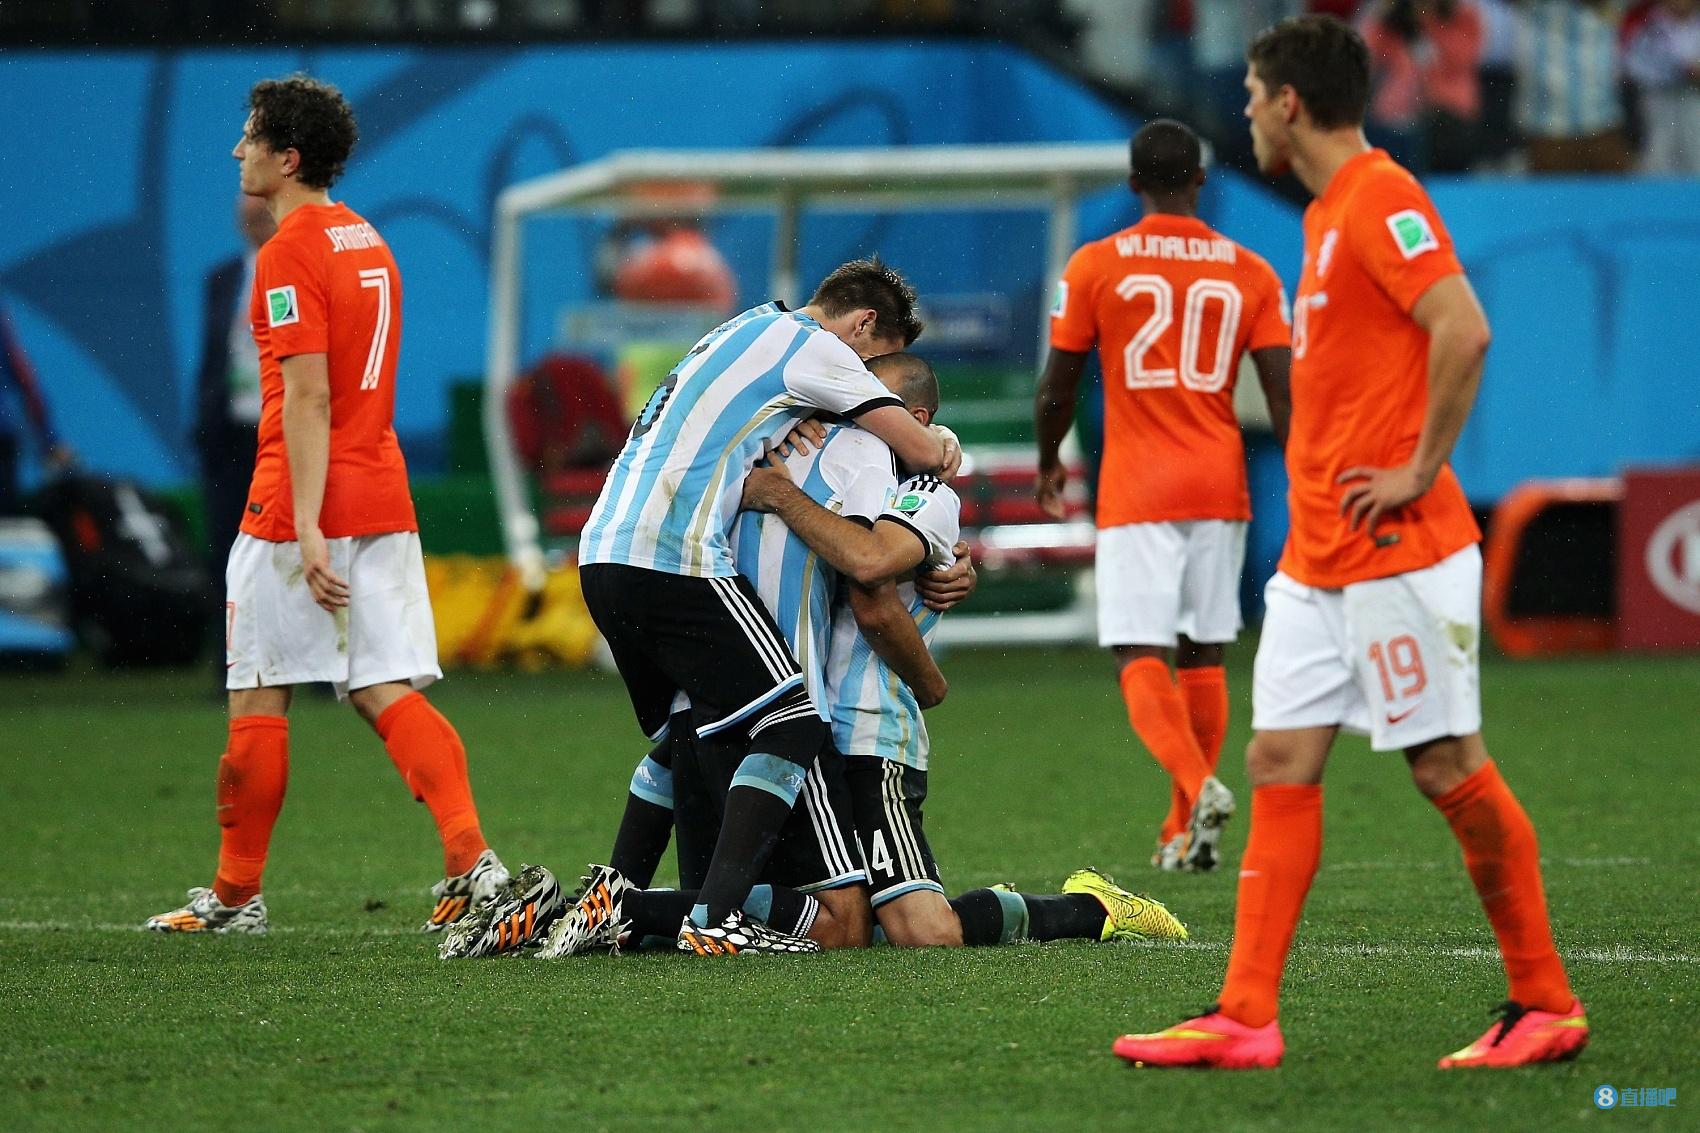 14年世界杯阿根廷对荷兰 2014世界杯半决赛阿根廷vs荷兰集锦 14年世界杯半决赛阿根廷荷兰 2014年世界杯阿根廷vs荷兰 满满的回忆！回顾阿根廷荷兰世界杯对阵过往瞬间